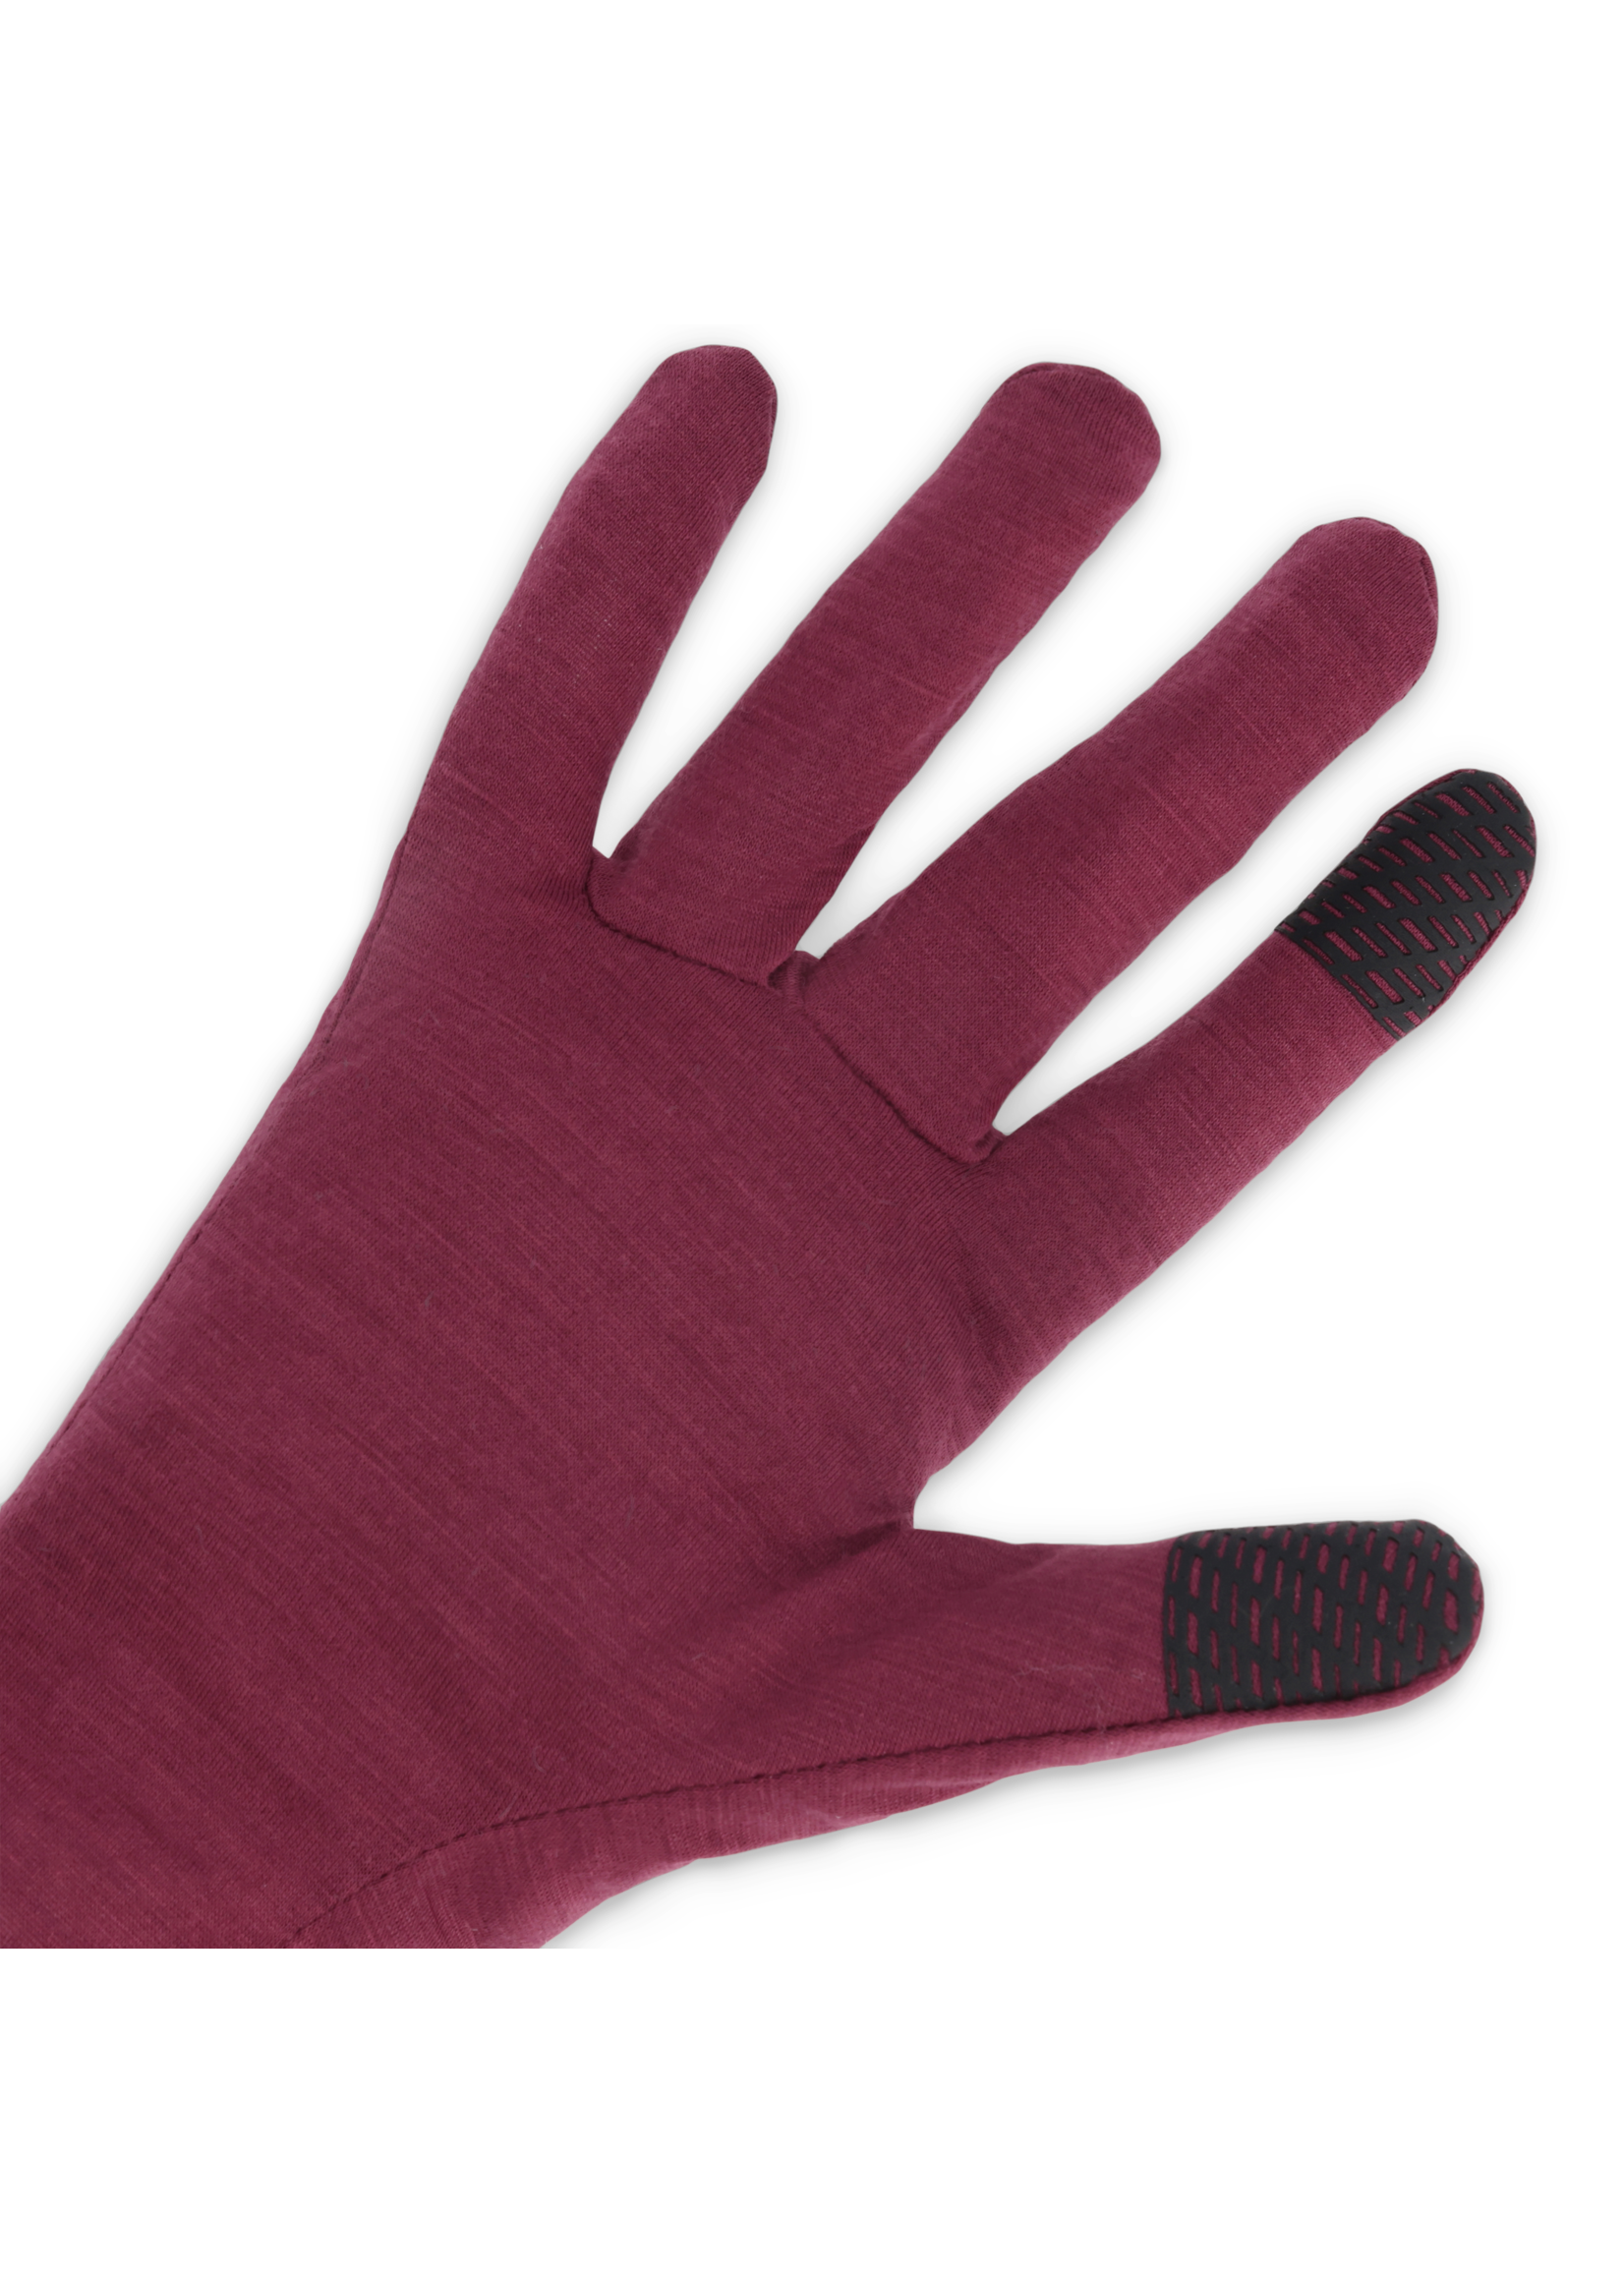 Outdoor Research Merino 150 Sensor Glove Liners